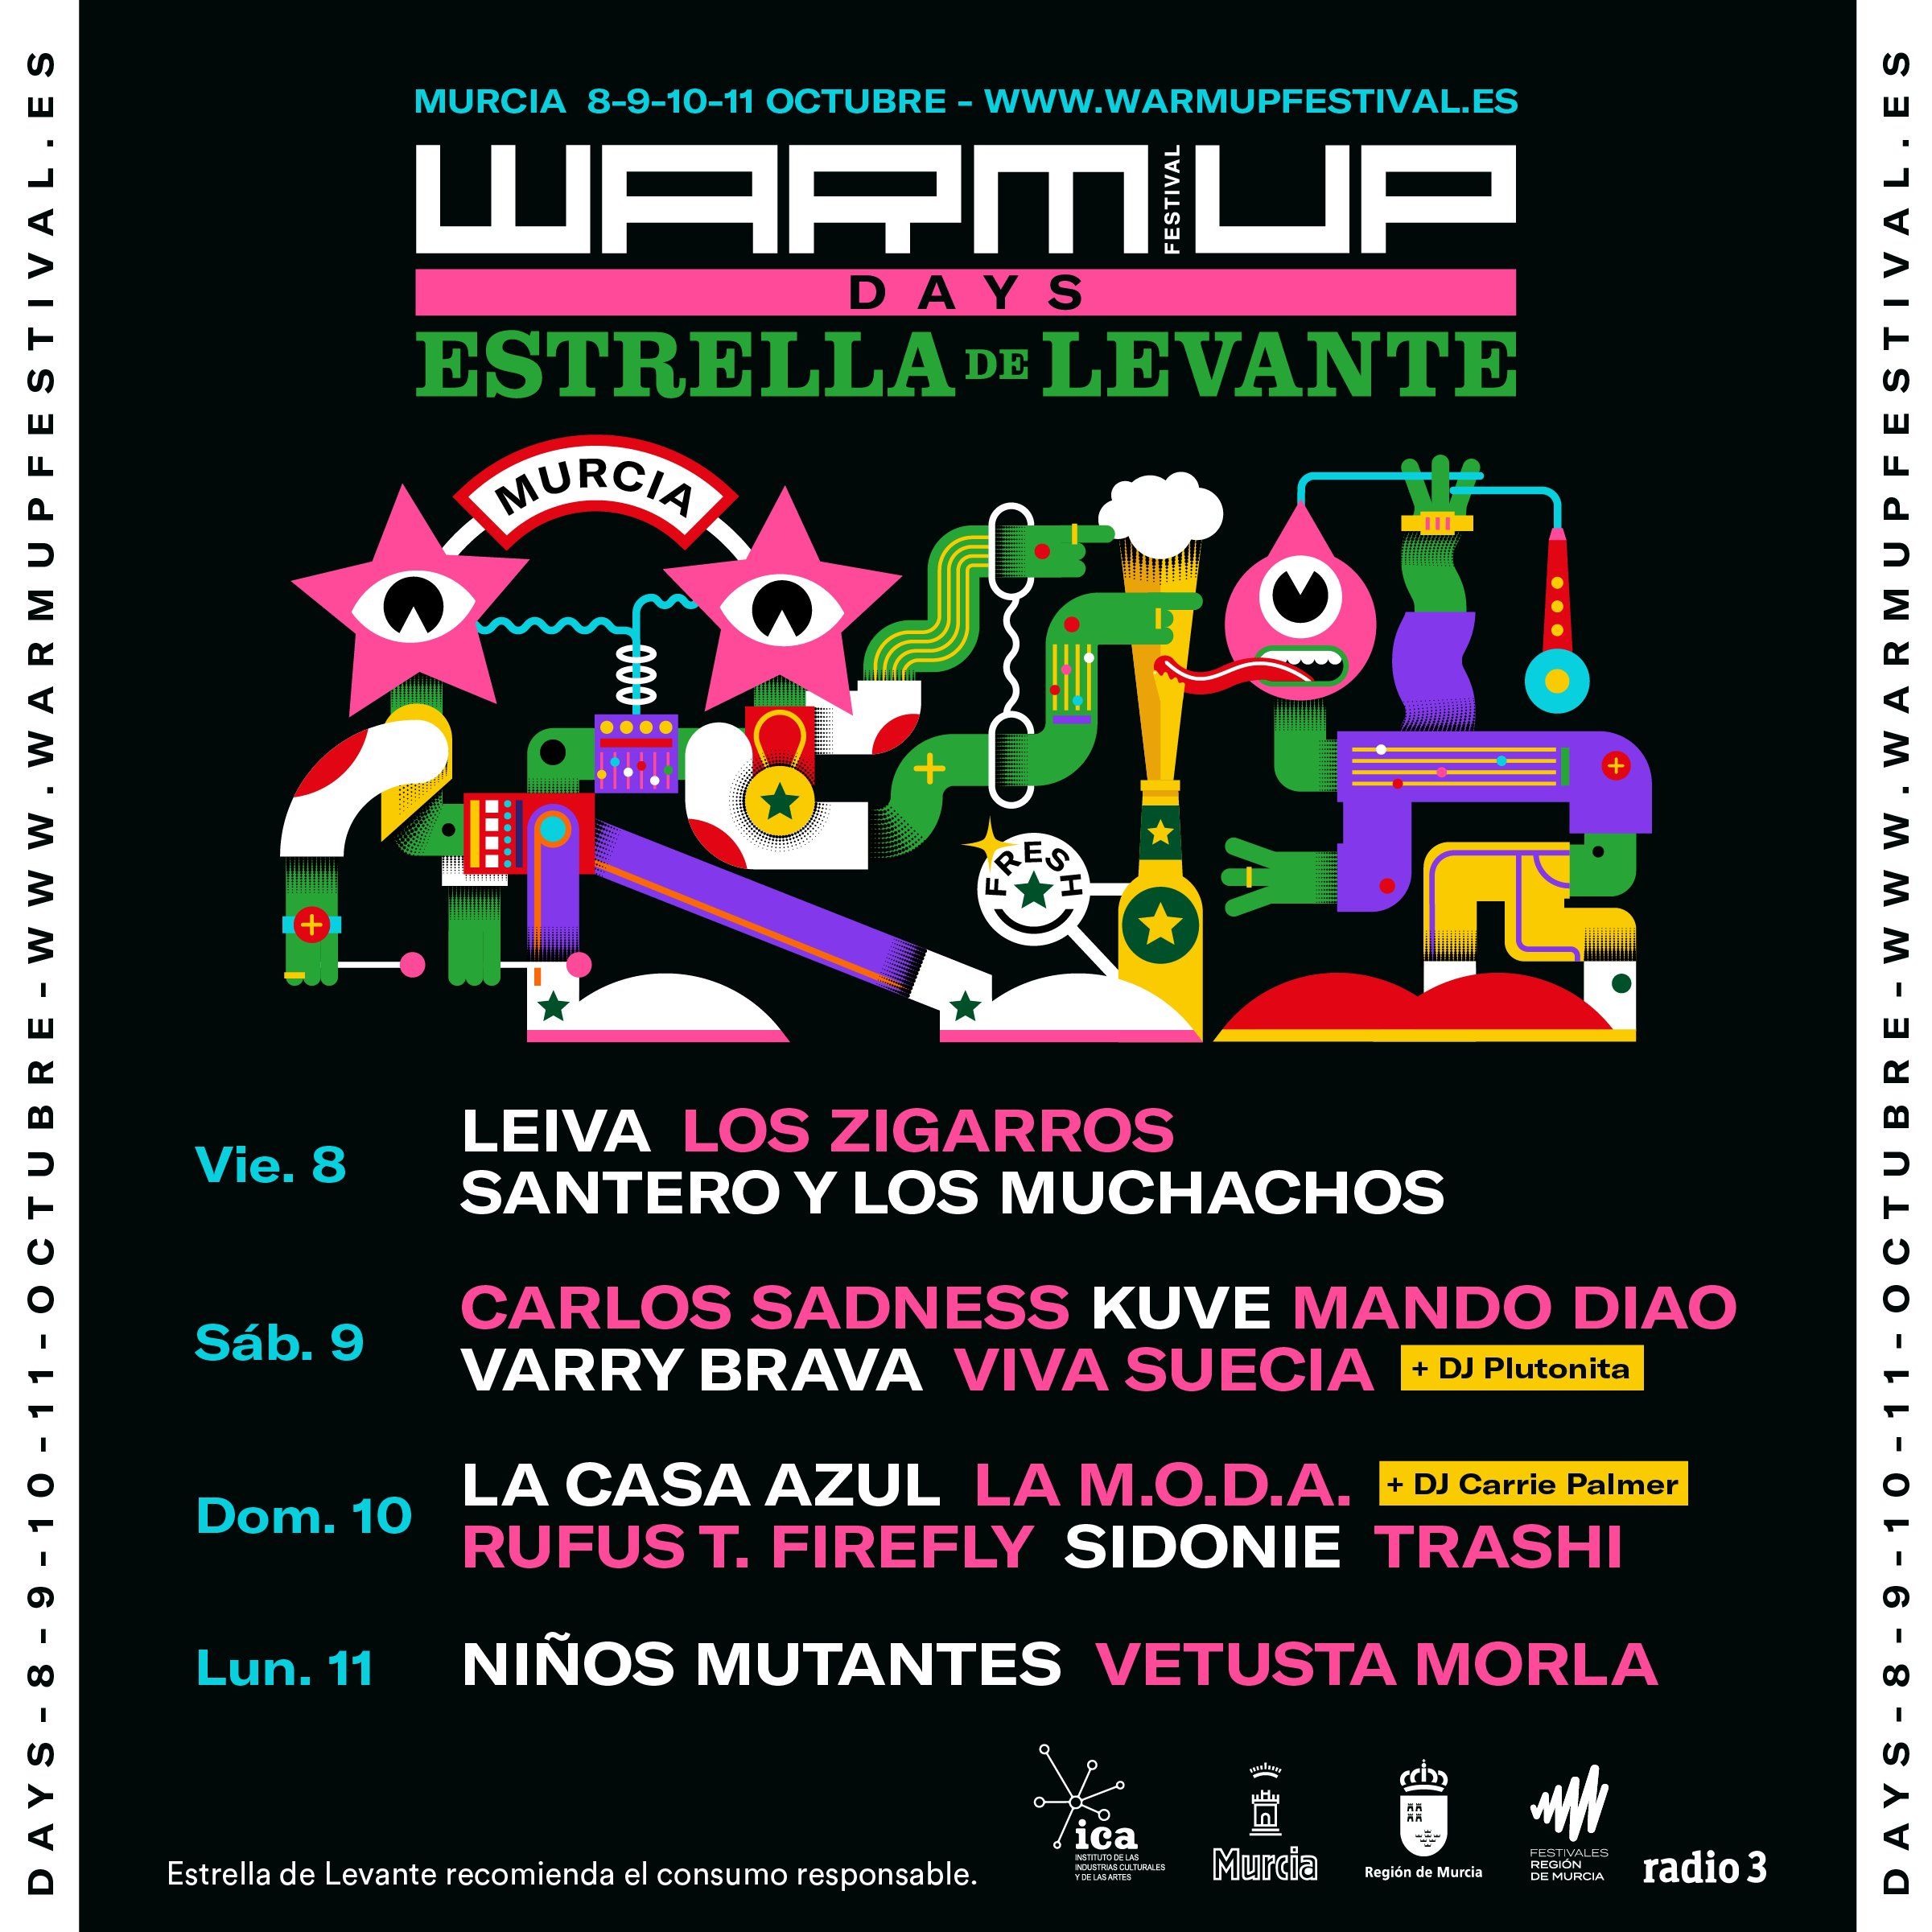 WARM UP DAYS: El ciclo de conciertos en La Fica del 8 al 11 de octubre del WARM UP